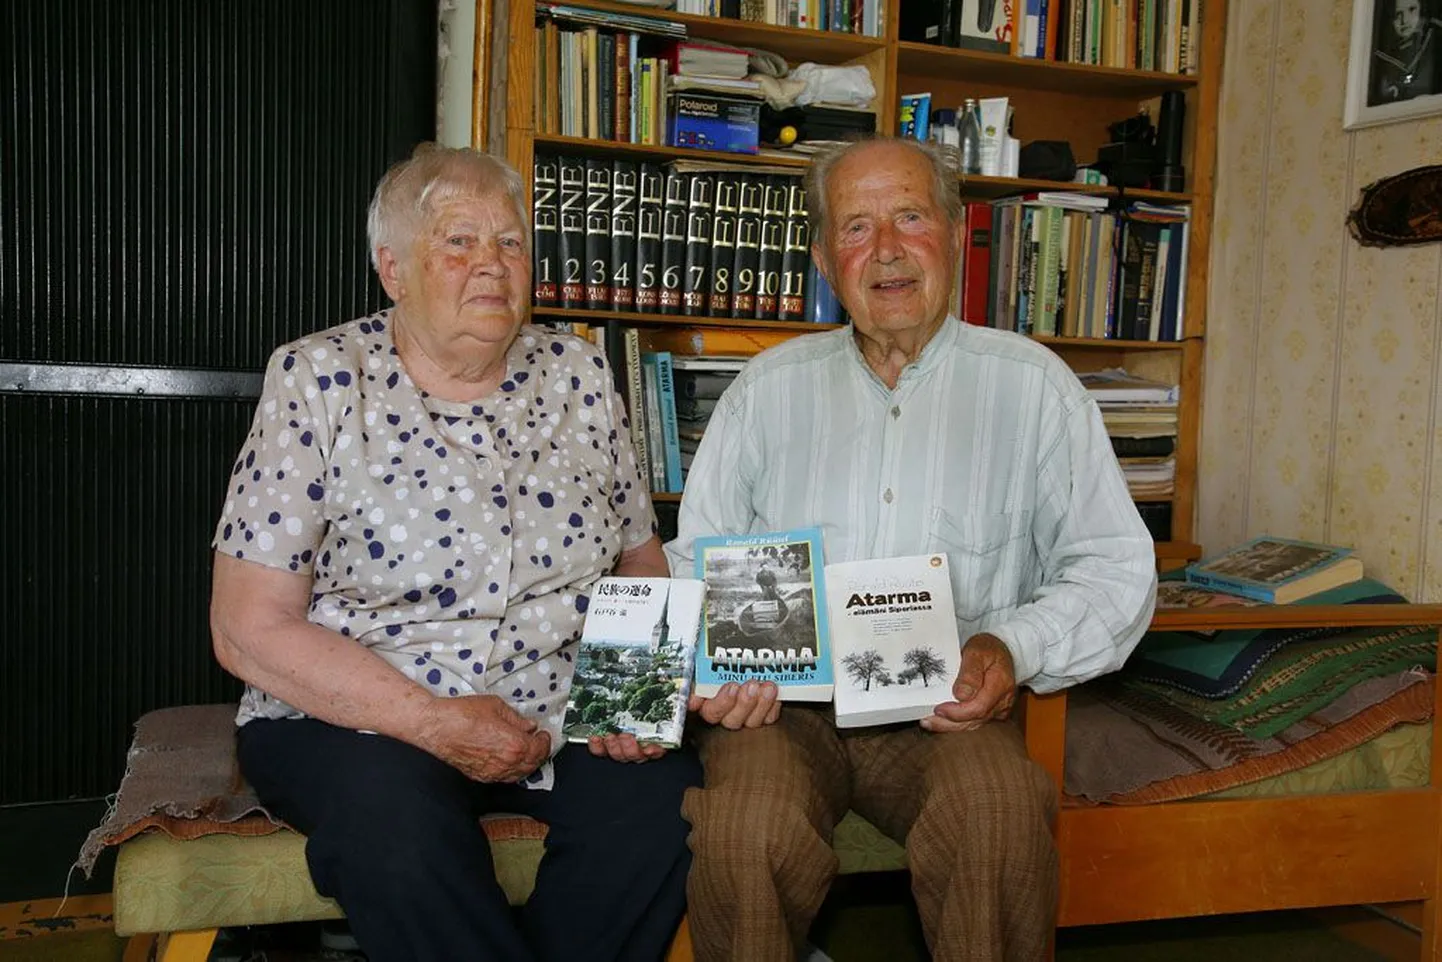 Evi ja Ronald Rüütel on oma Pärnjõe kodu riiulist välja otsinud kolm eri keeltes raamatut, kus kirjeldatud nende katsumusi Siberis.